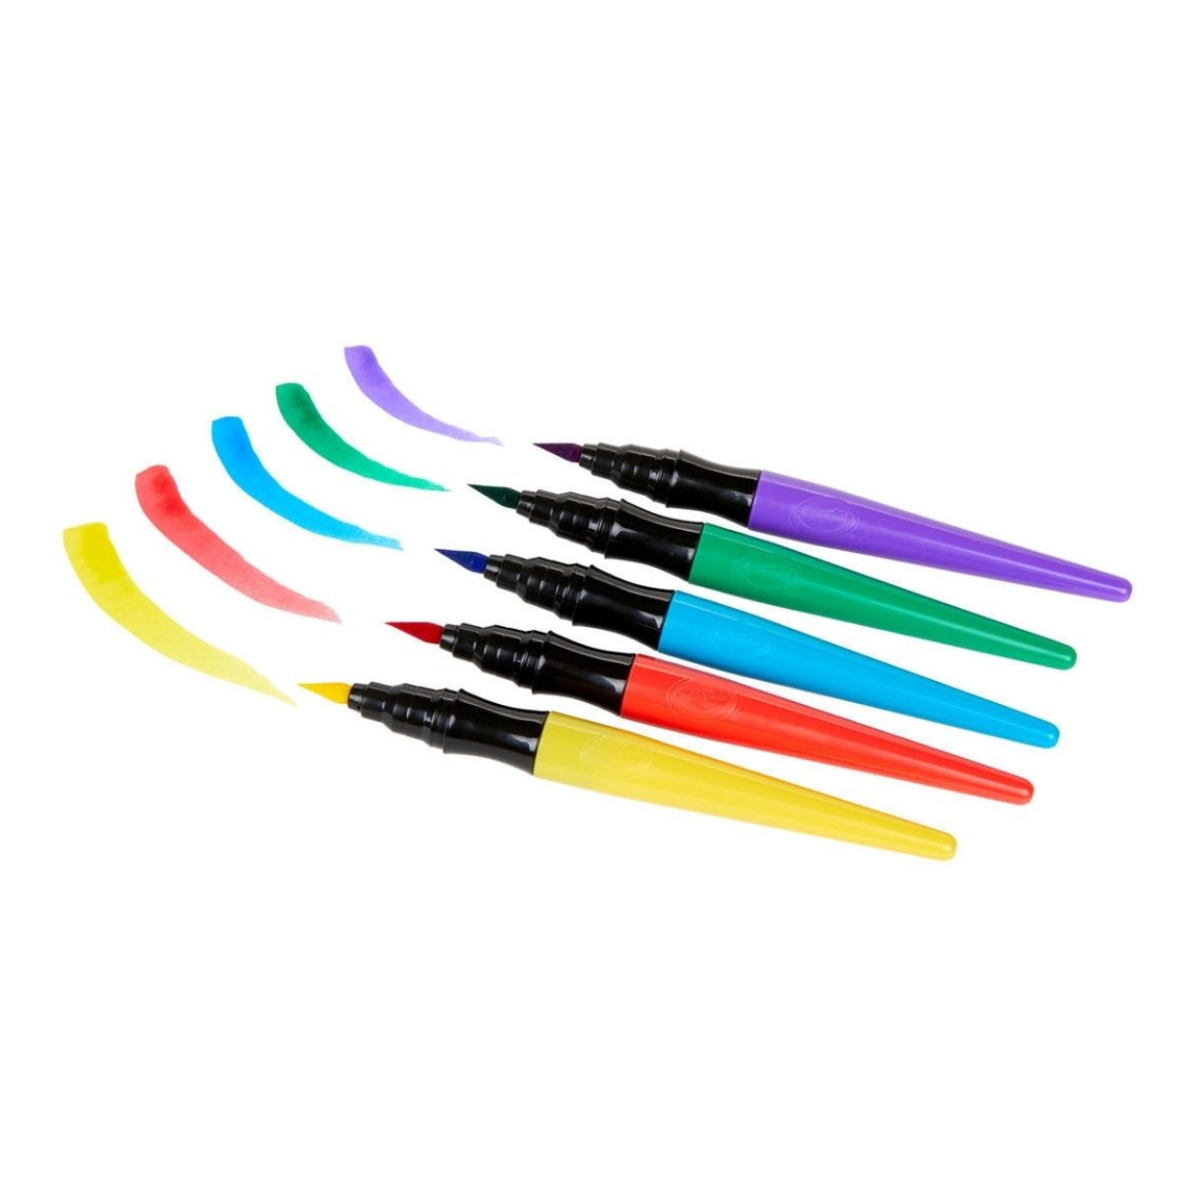 Crayola Paint Brush Pens Washable